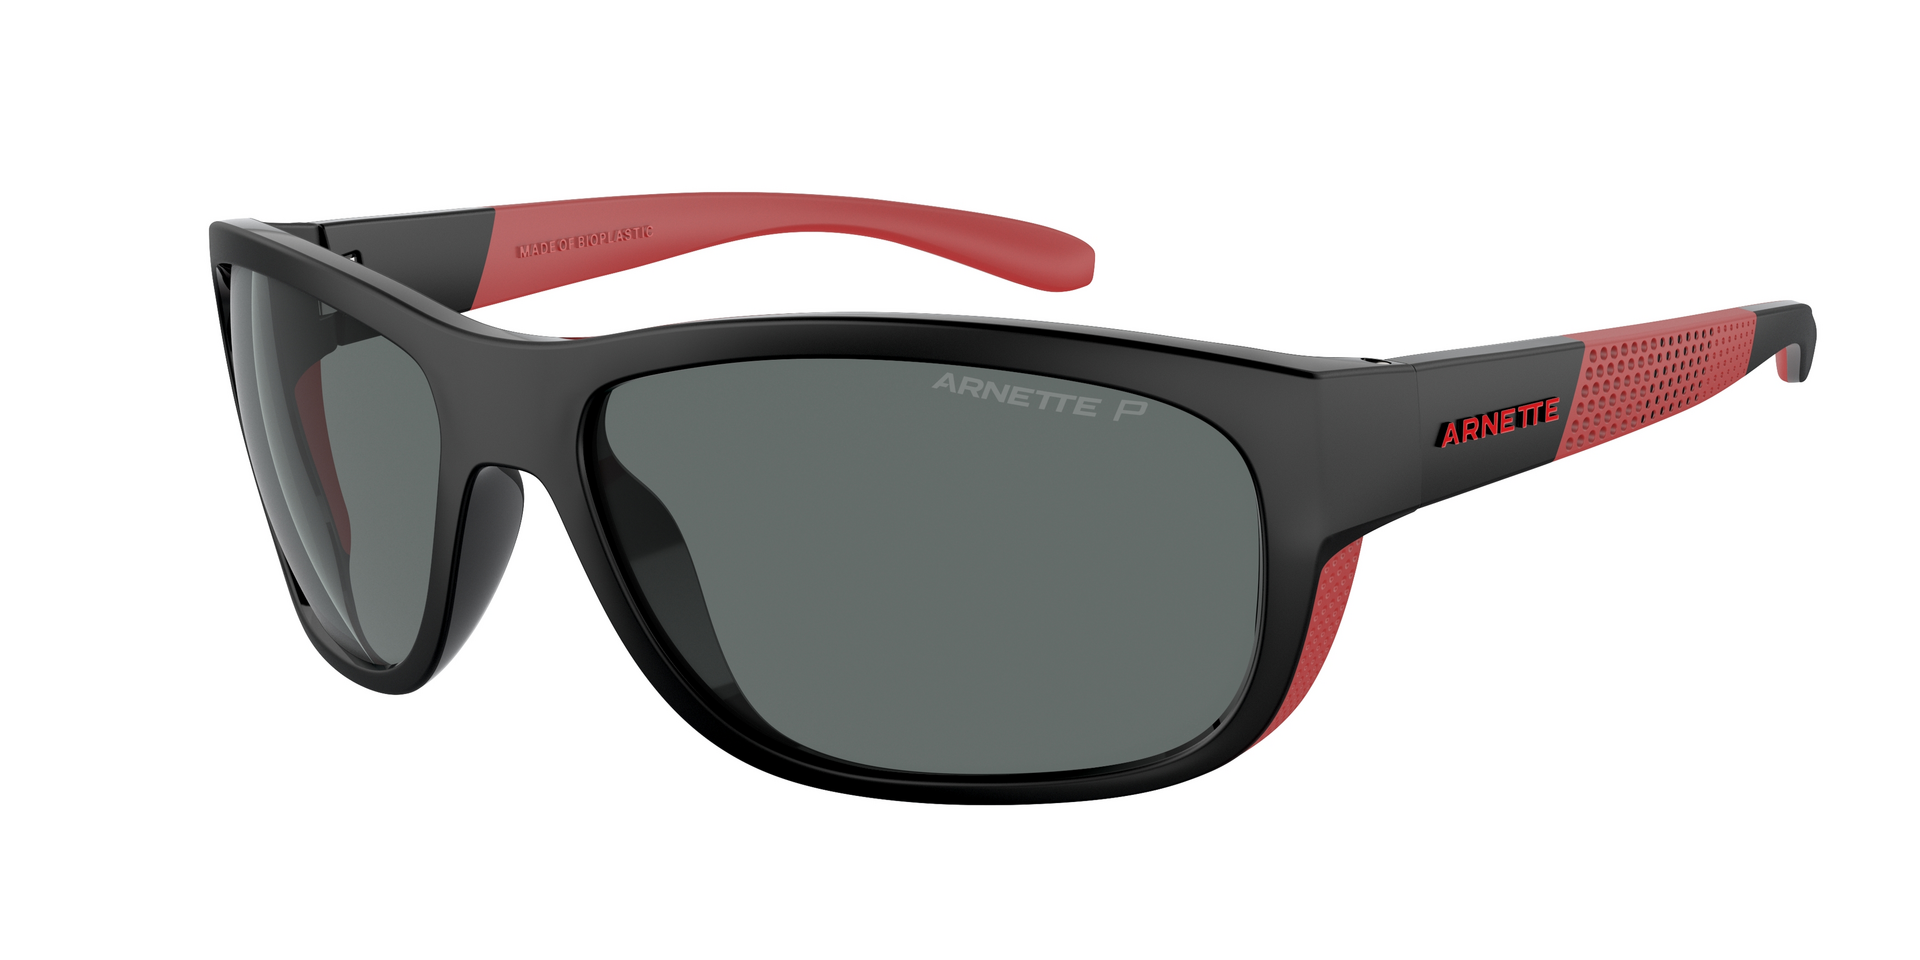 Das Bild zeigt die Sonnenbrille AN4337 275381 von der Marke Arnette in schwarz/rot.